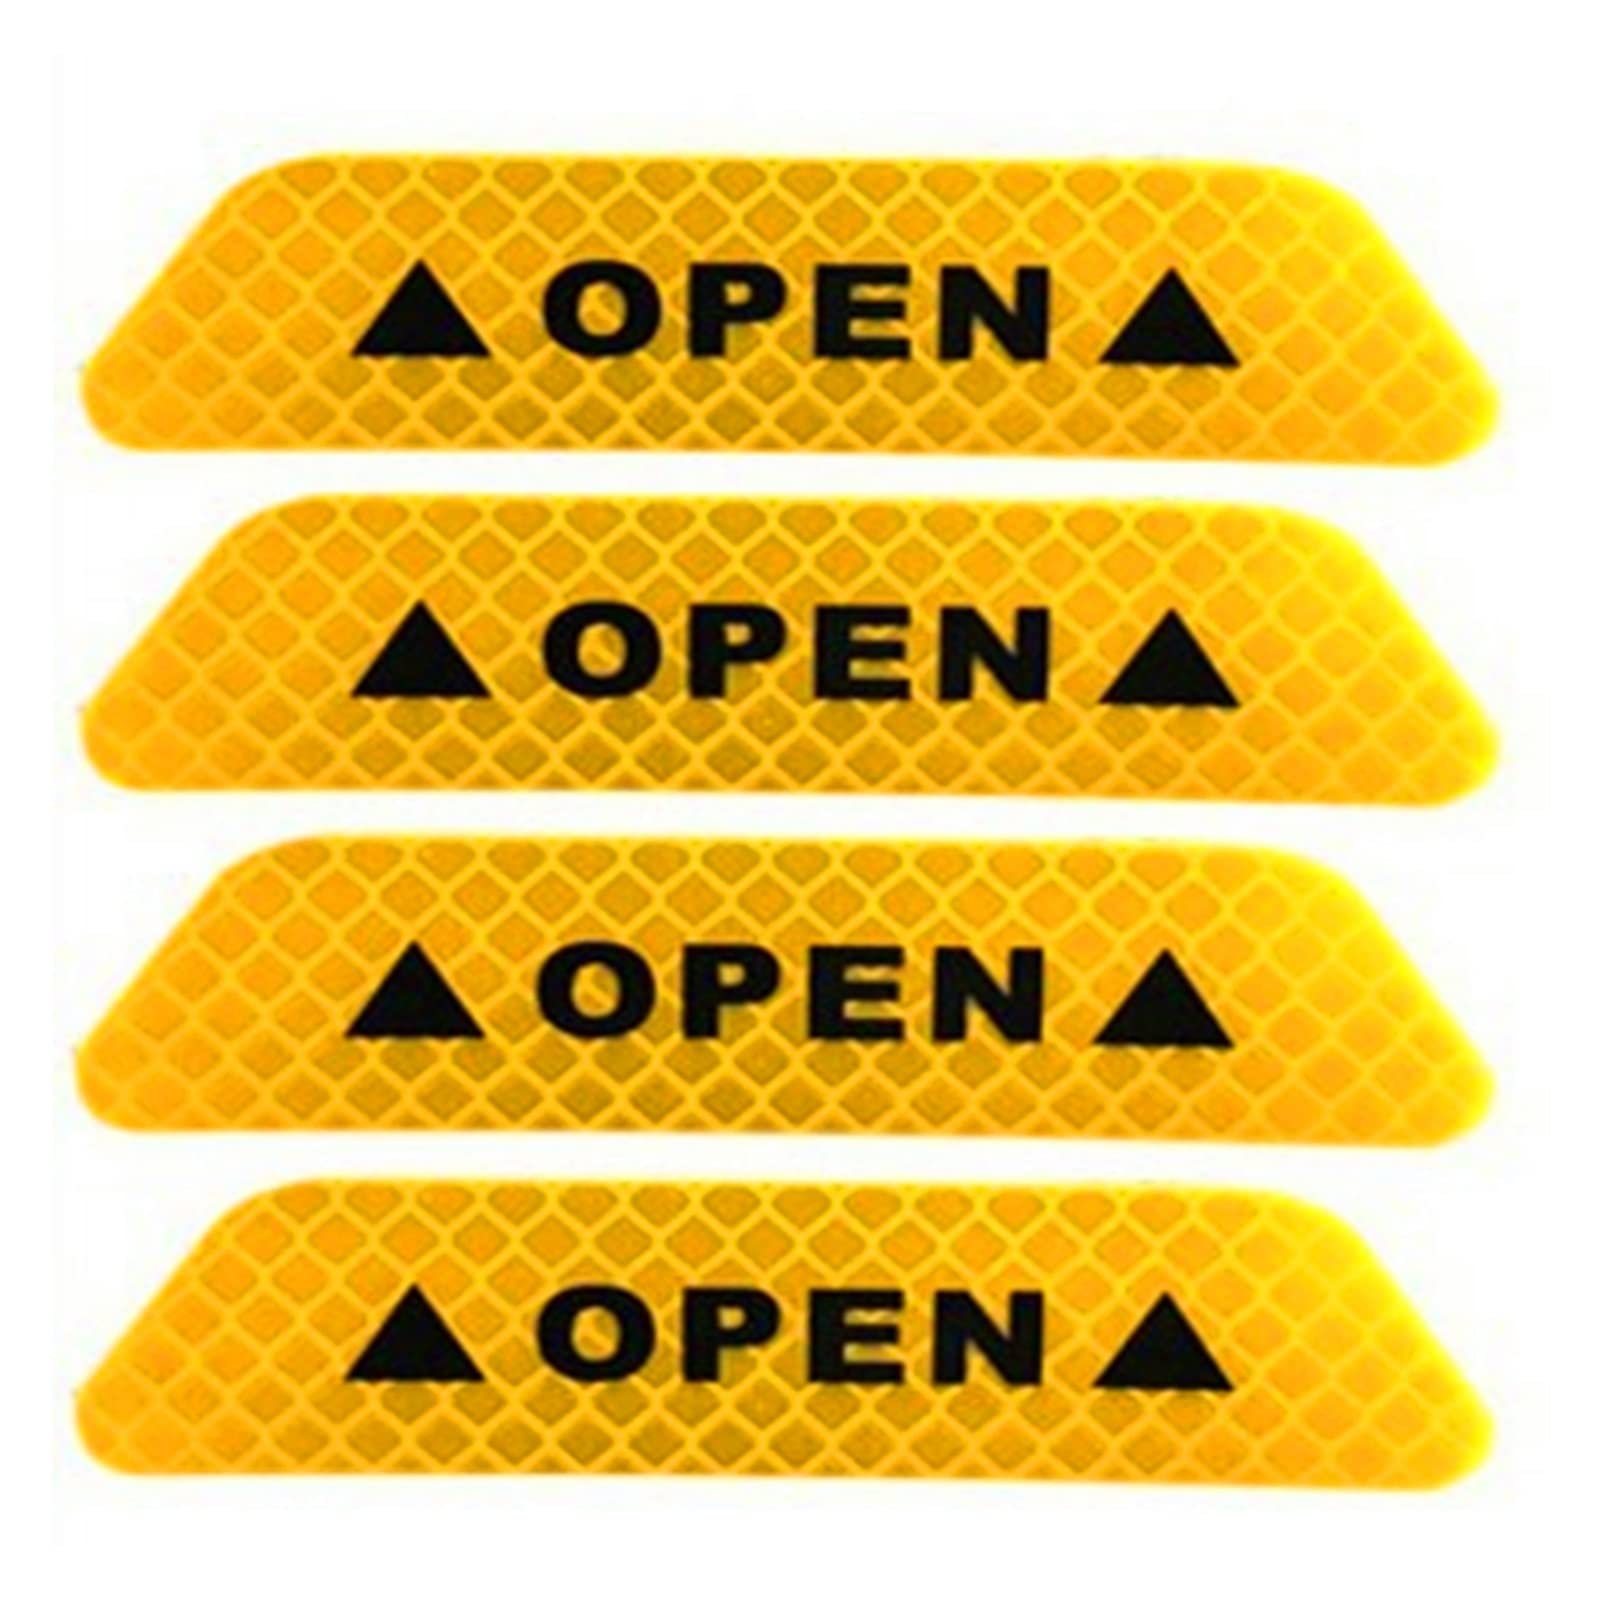 AANAN 4 Teile/satz Autotür Aufkleber DIY Auto Öffnen Reflexband Warnzeichen Reflektierende Öffnen Hinweis Fahrrad Zubehör Auto Dekoration(4Pcs Yellow) von AANAN